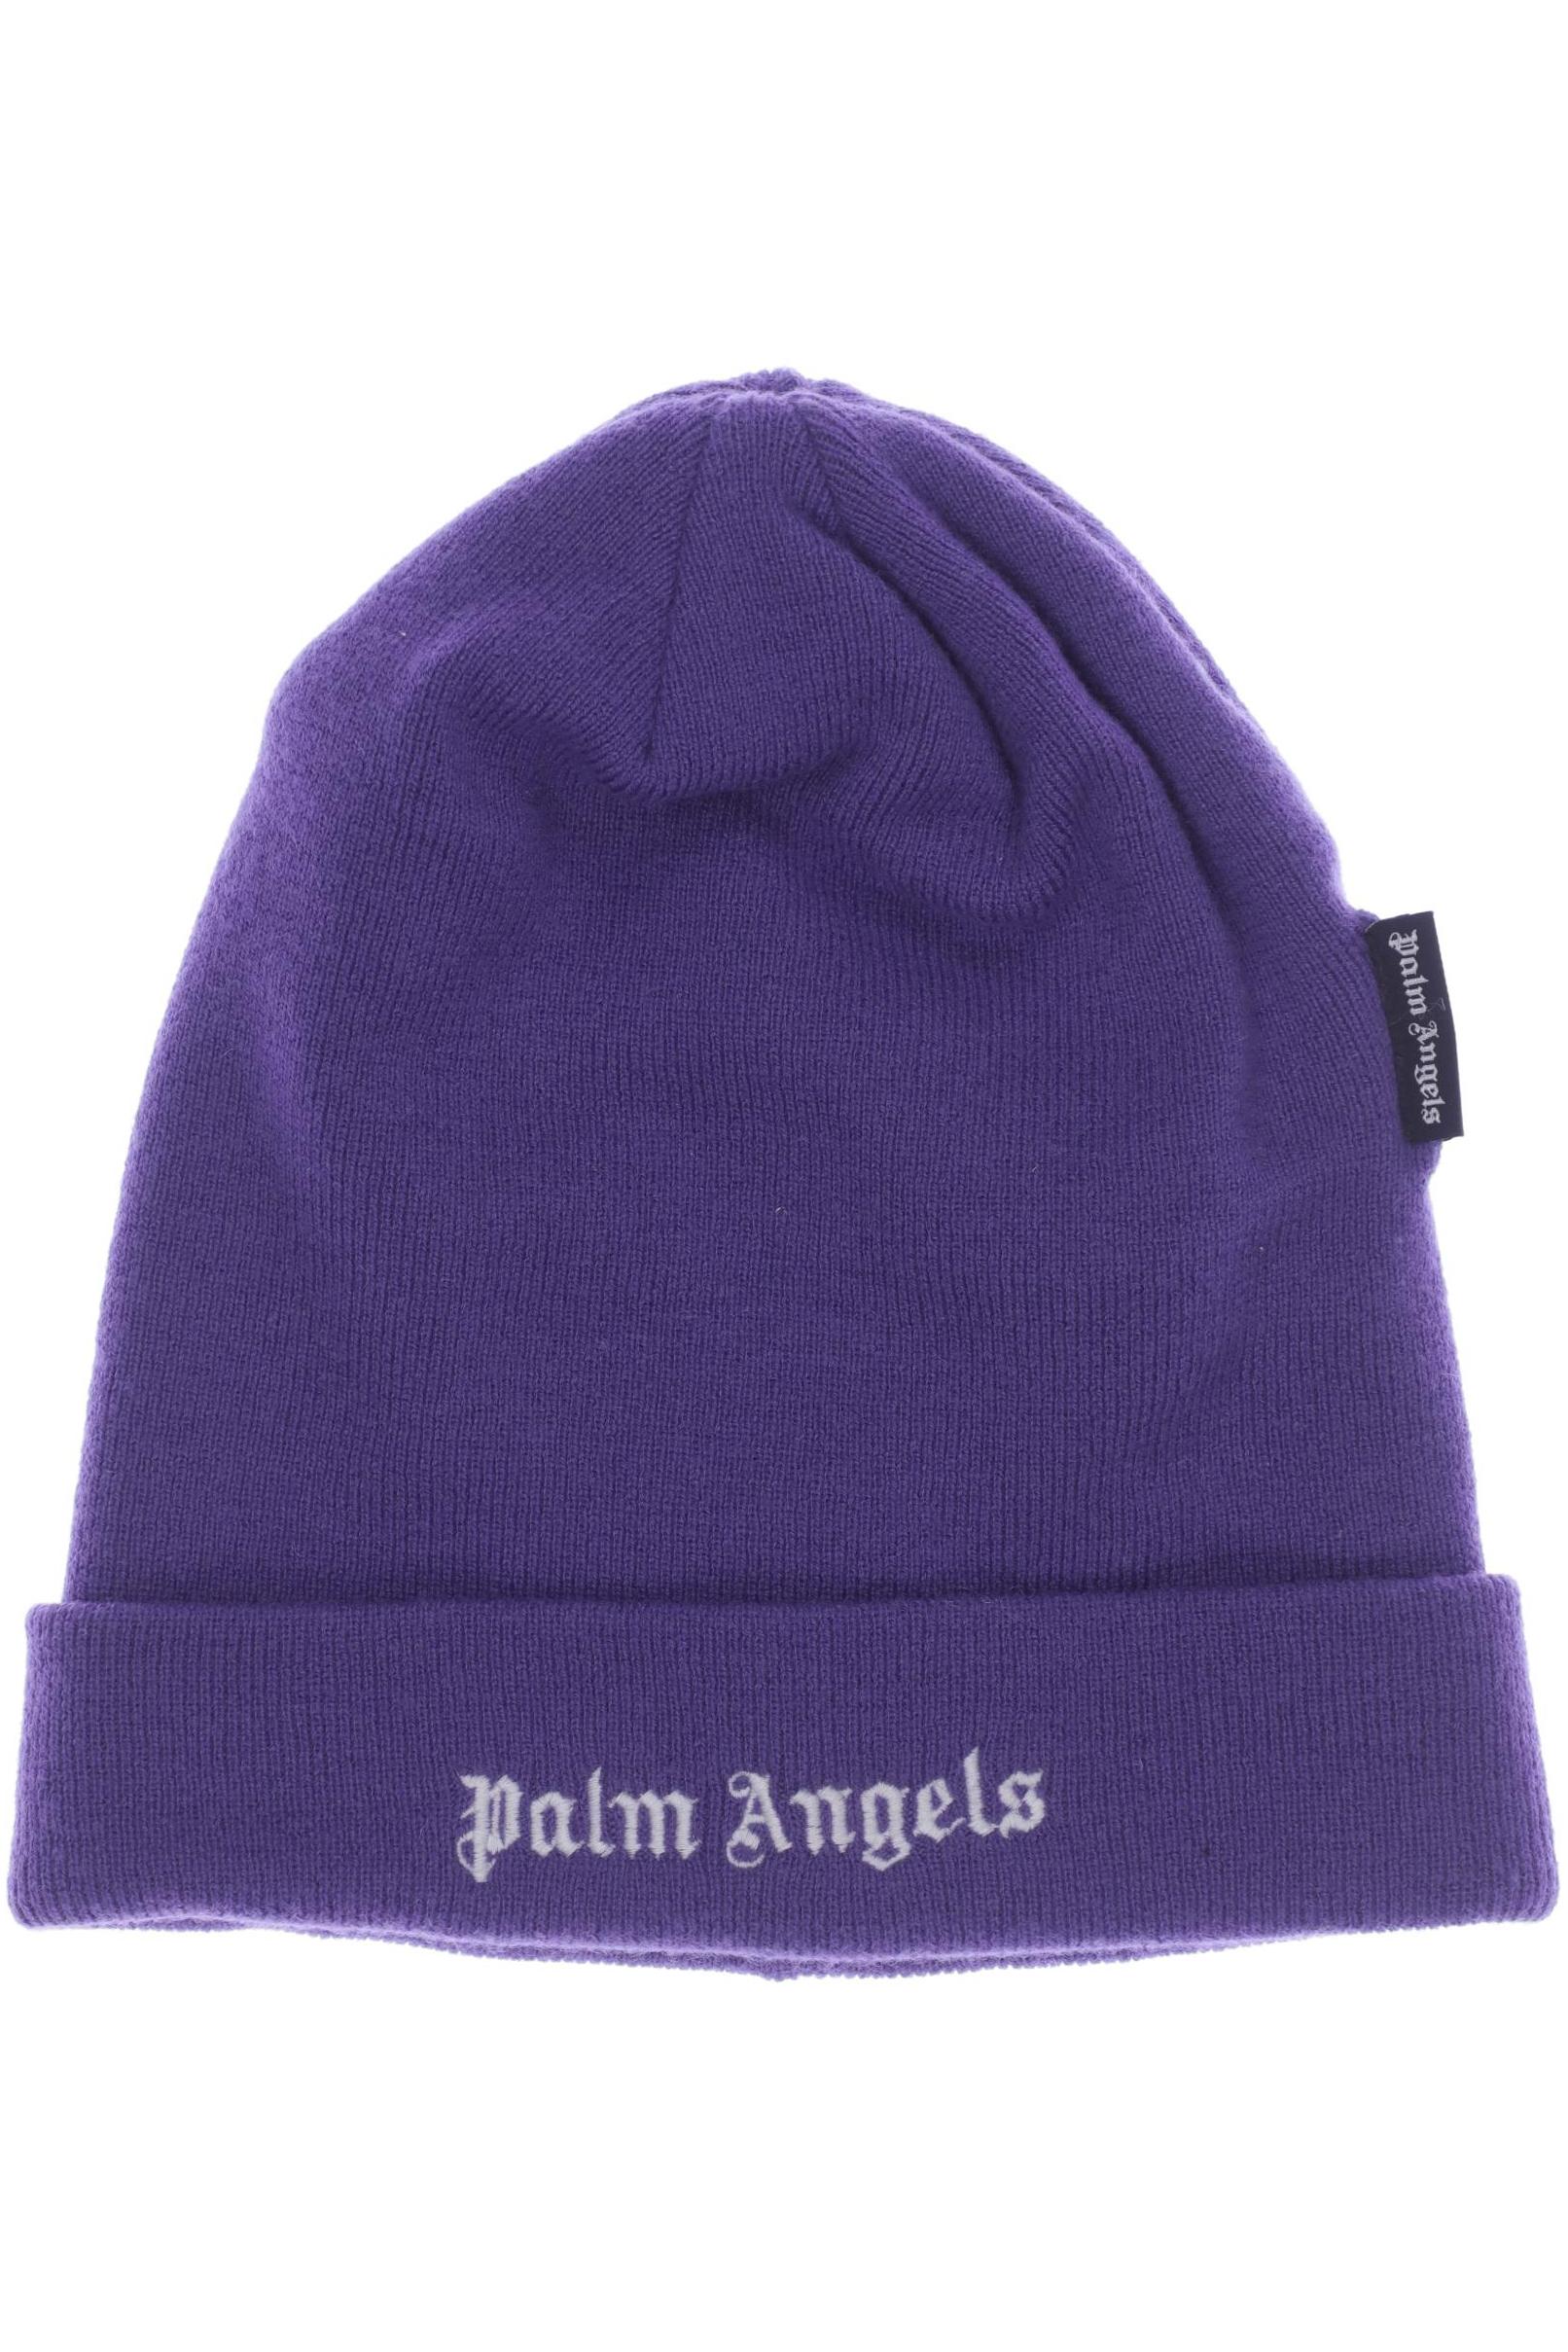 Palm Angels Herren Hut/Mütze, flieder von Palm Angels